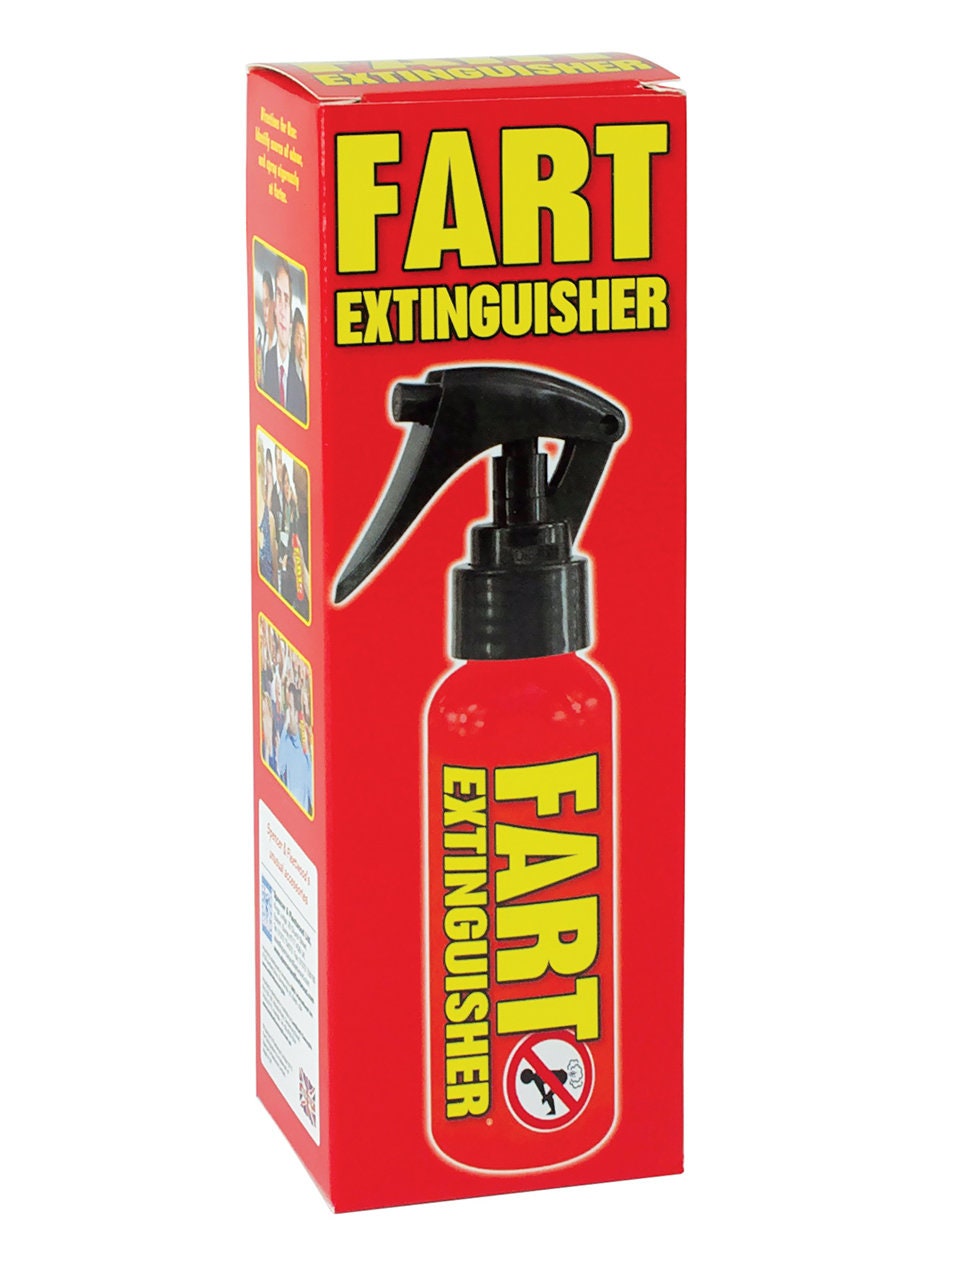 Fart Extinguisher Air Freshner Novelty Gift/ Christmas gift /Joke Toy 